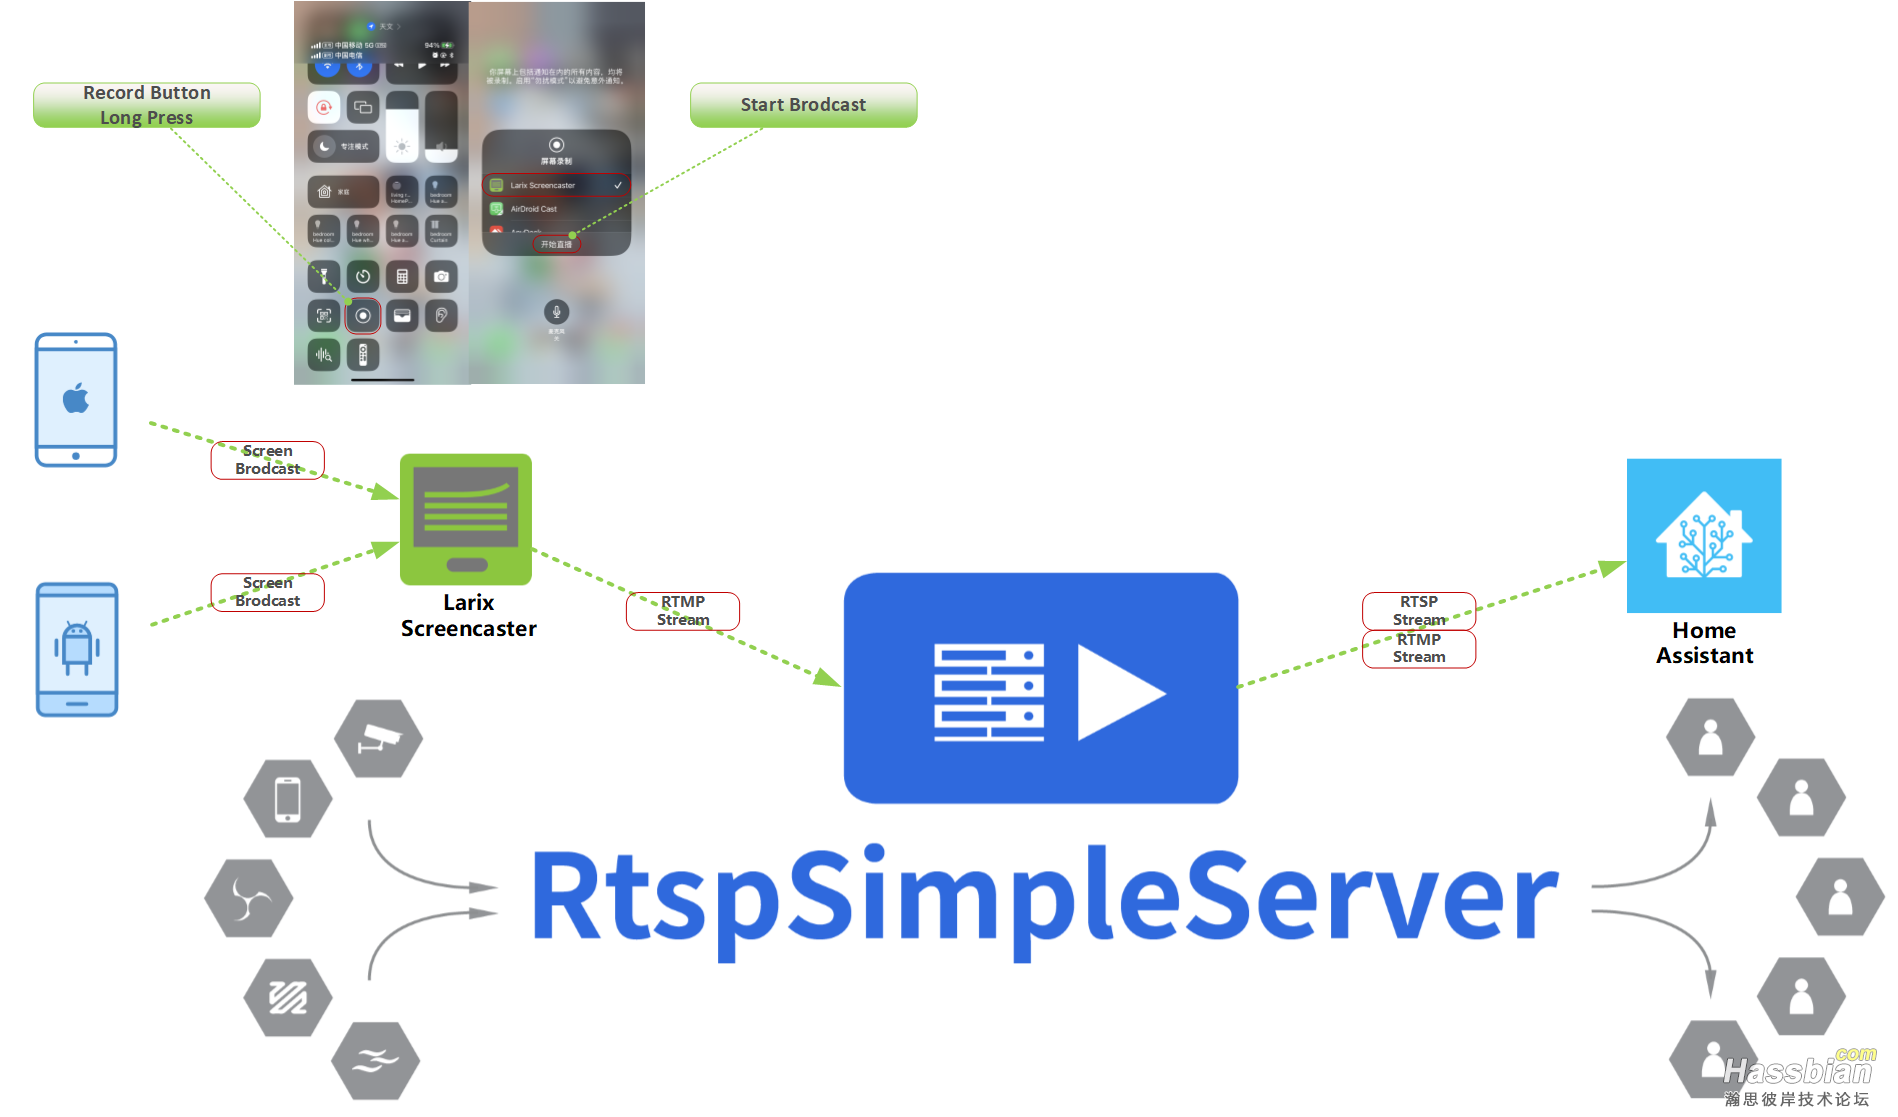 larix-screencaster-rtsp-simple-server-diagram